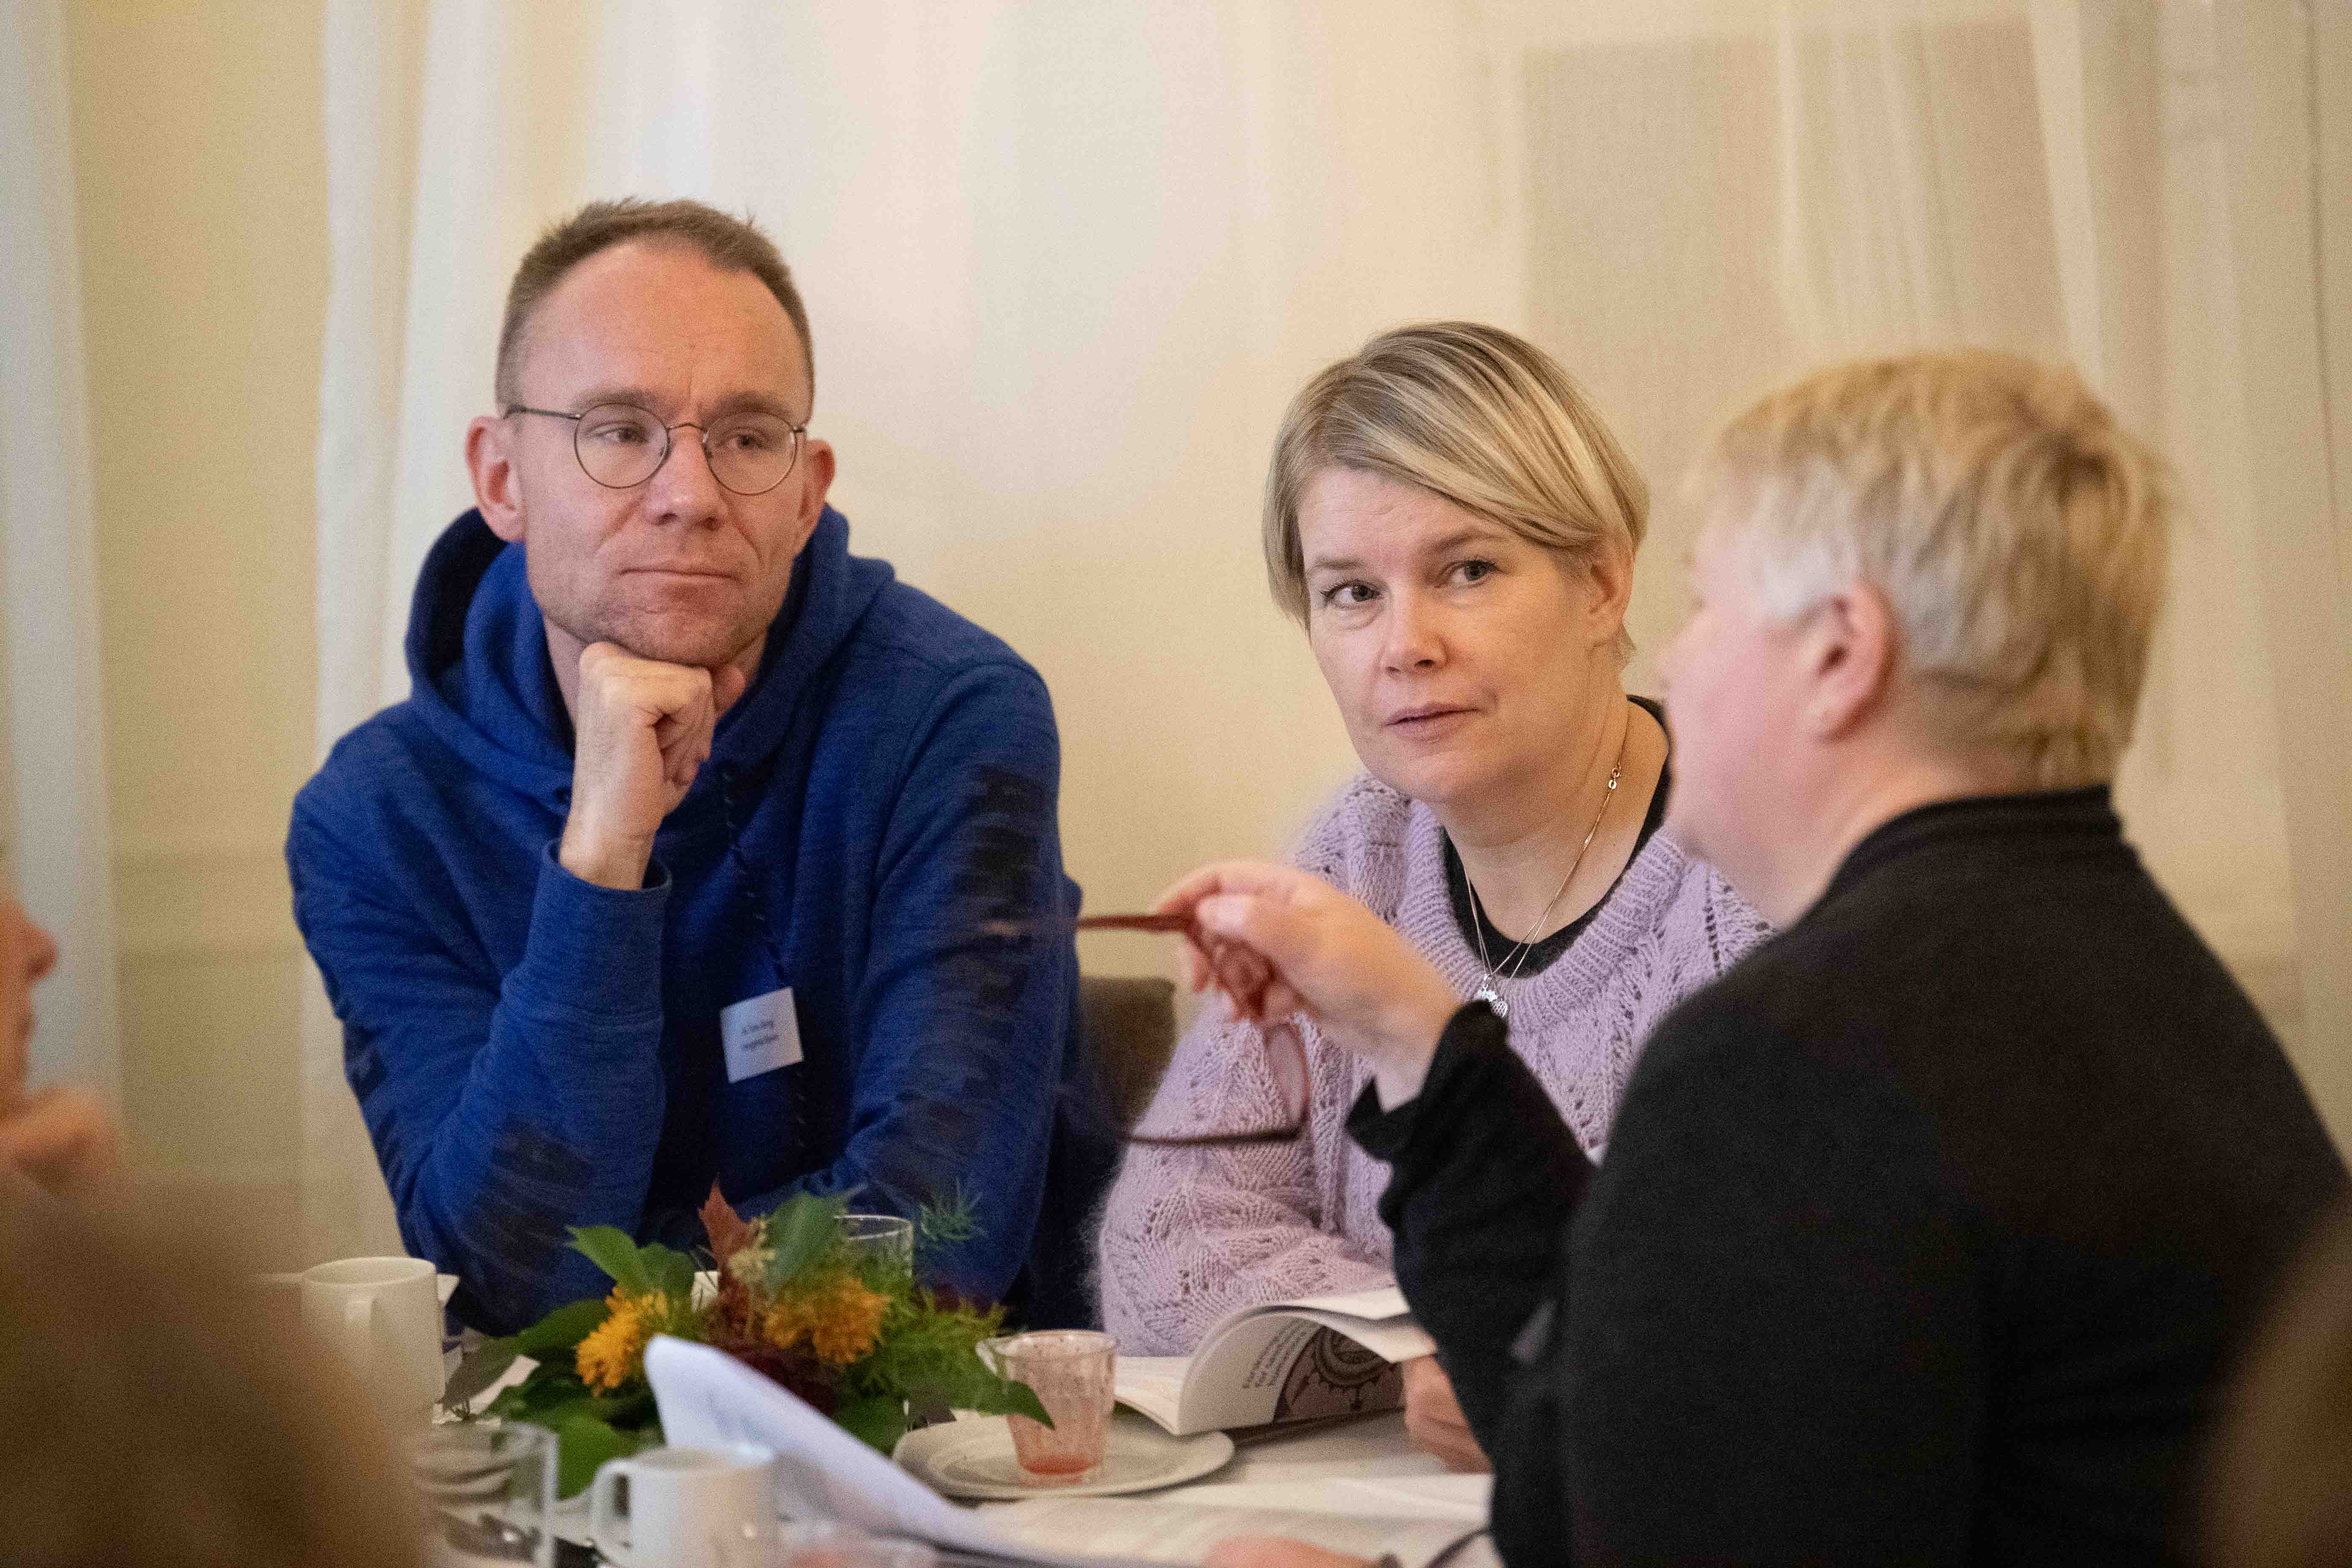 Jo Tore Berg og Elin Bygjordet på Holbergprisen i skolen sitt lærerseminar 2019. Foto: Thor Brødreskift